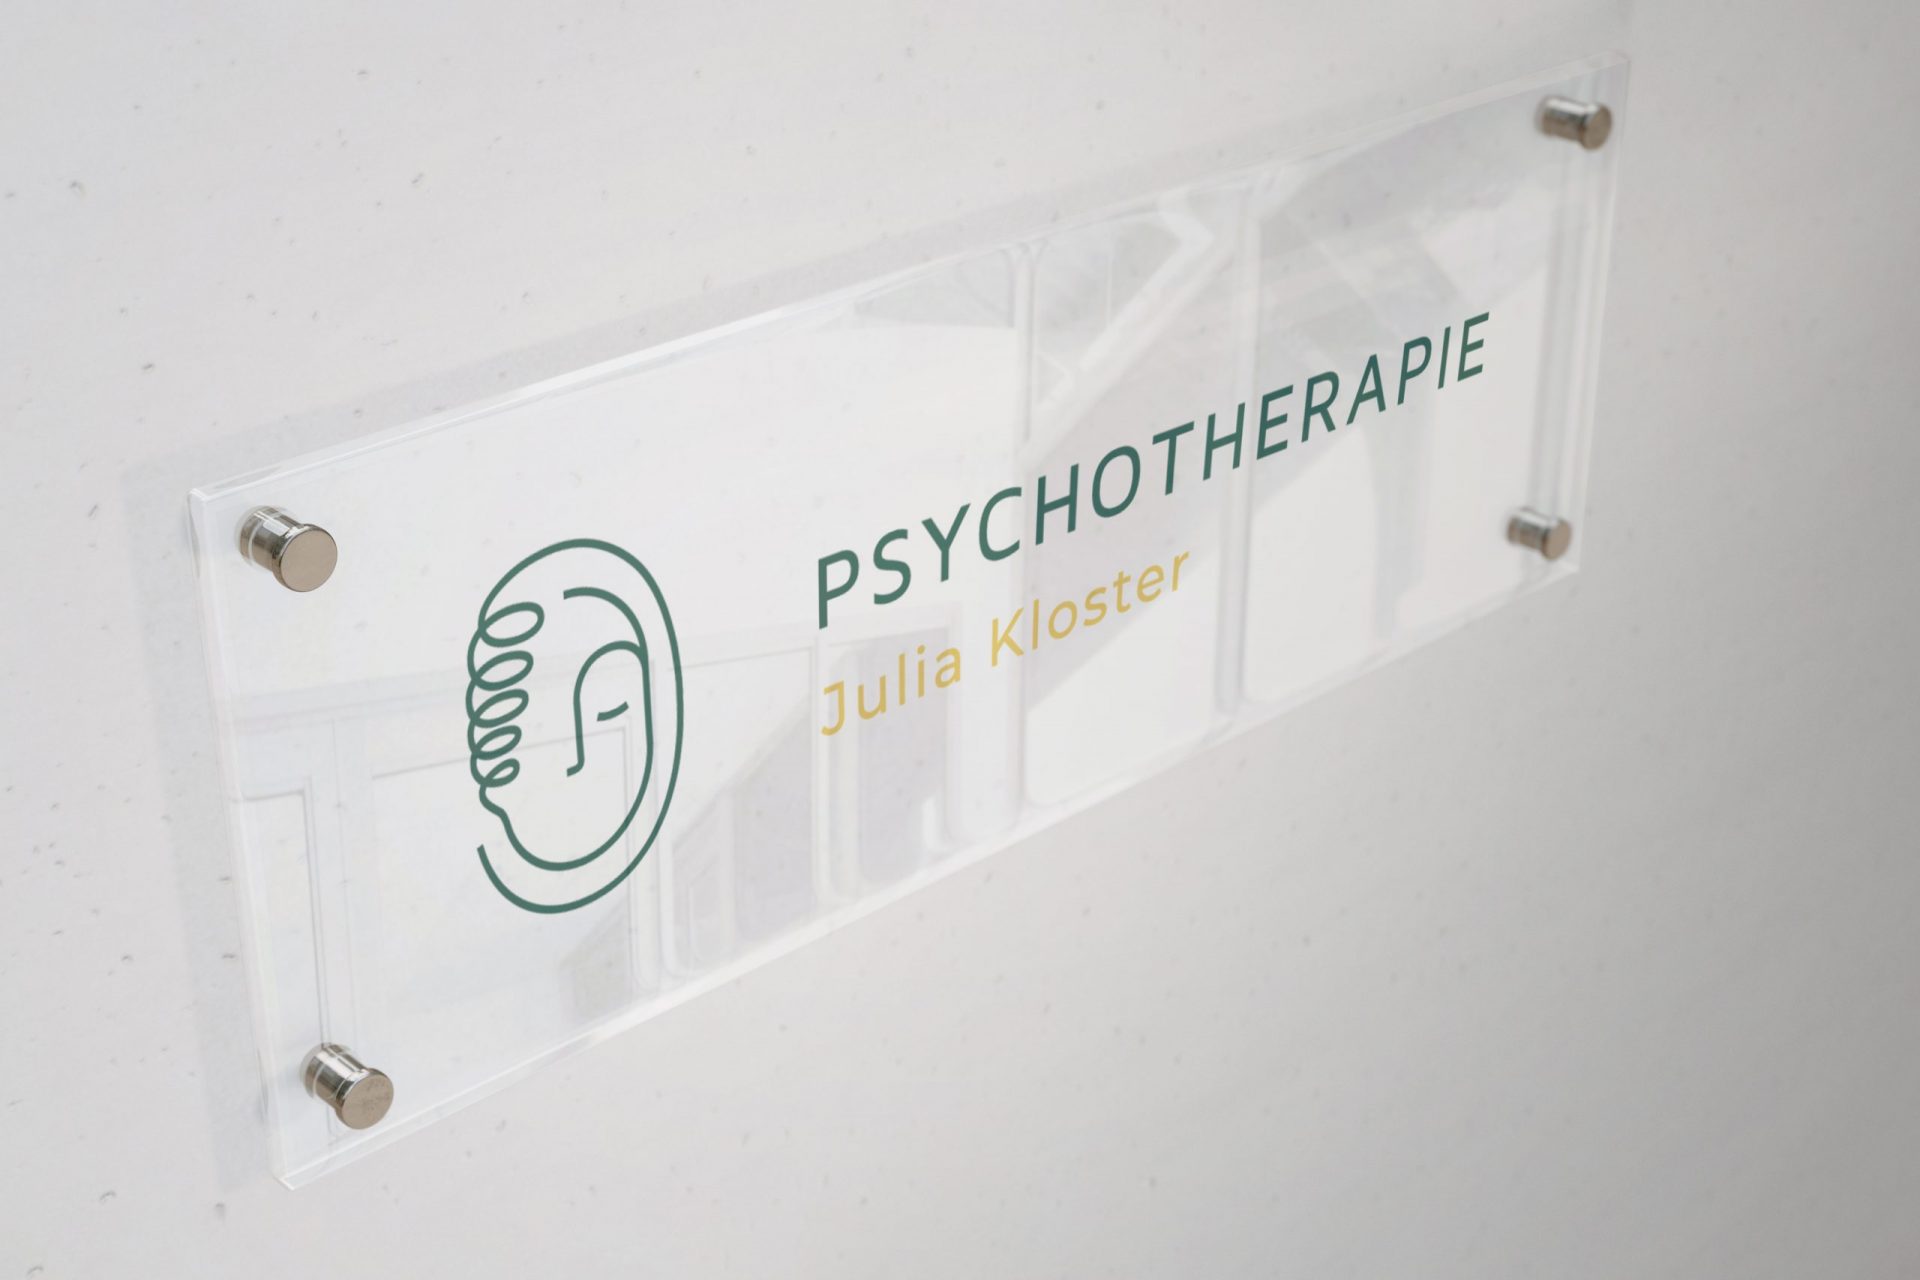 Das Praxisschild von Psychotherapie Julia Kloster